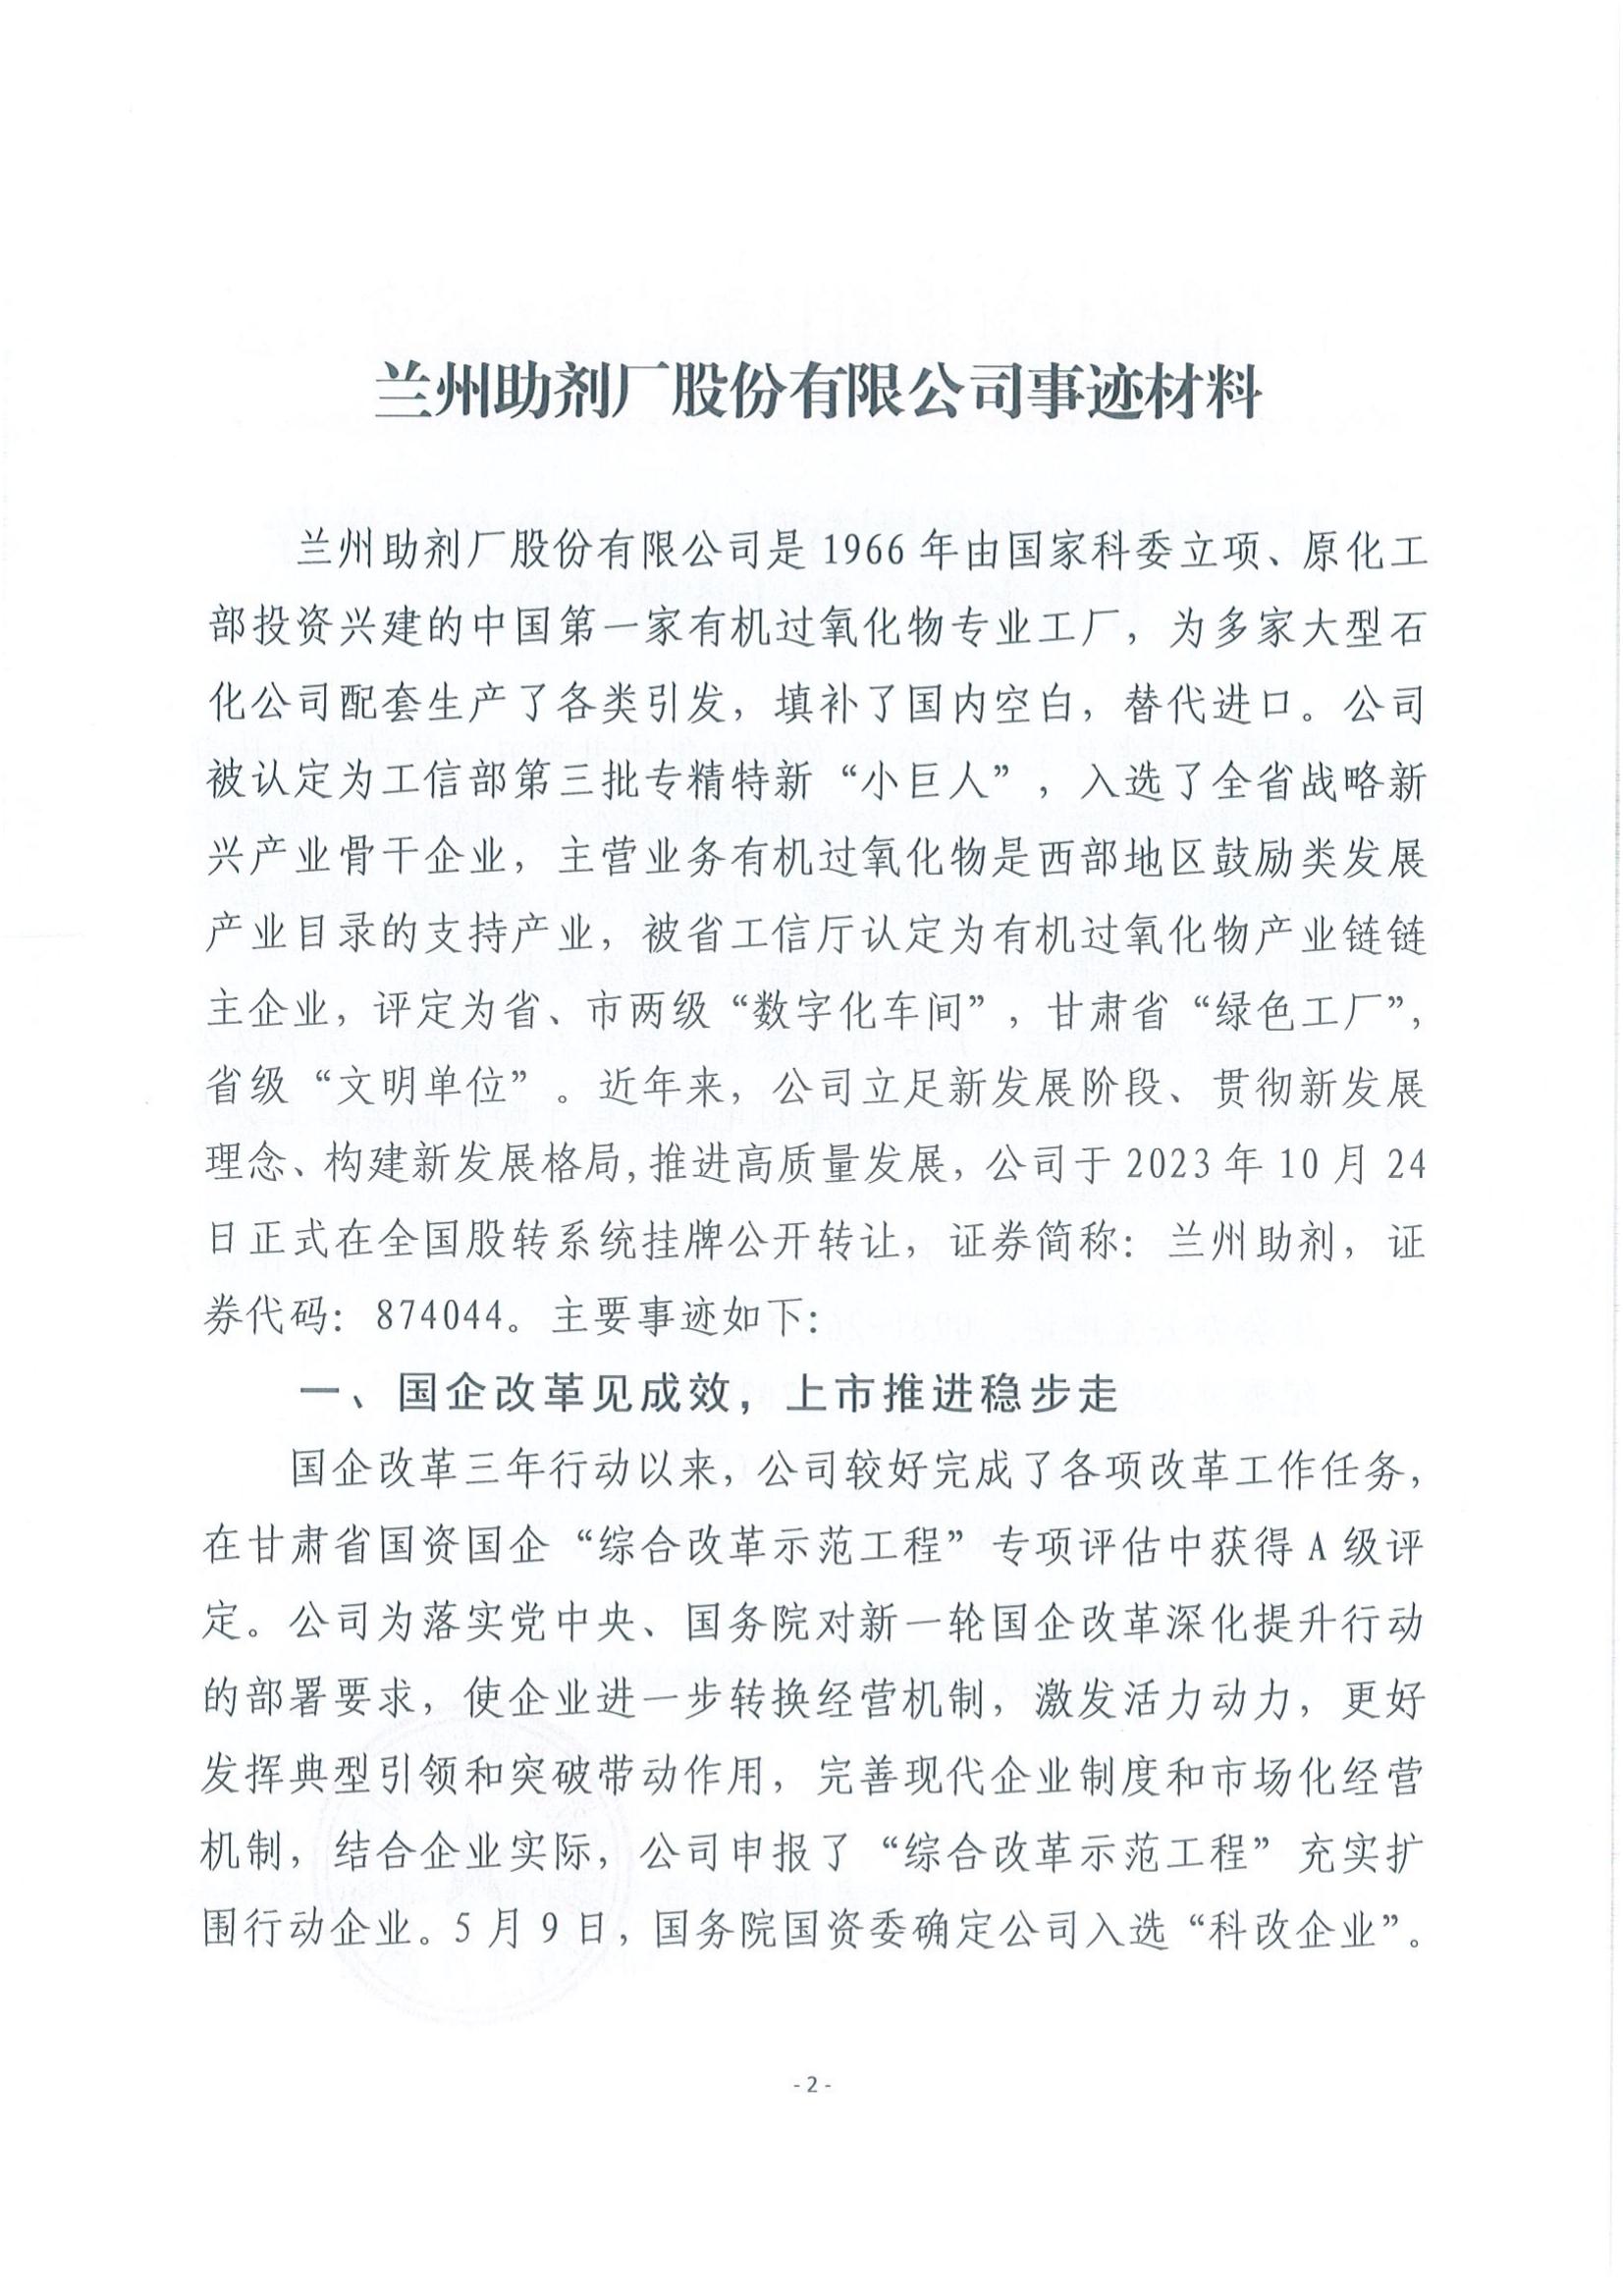 皇冠游戏在线平台工会关于推荐甘肃省五一劳动奖状的公示_01.jpg